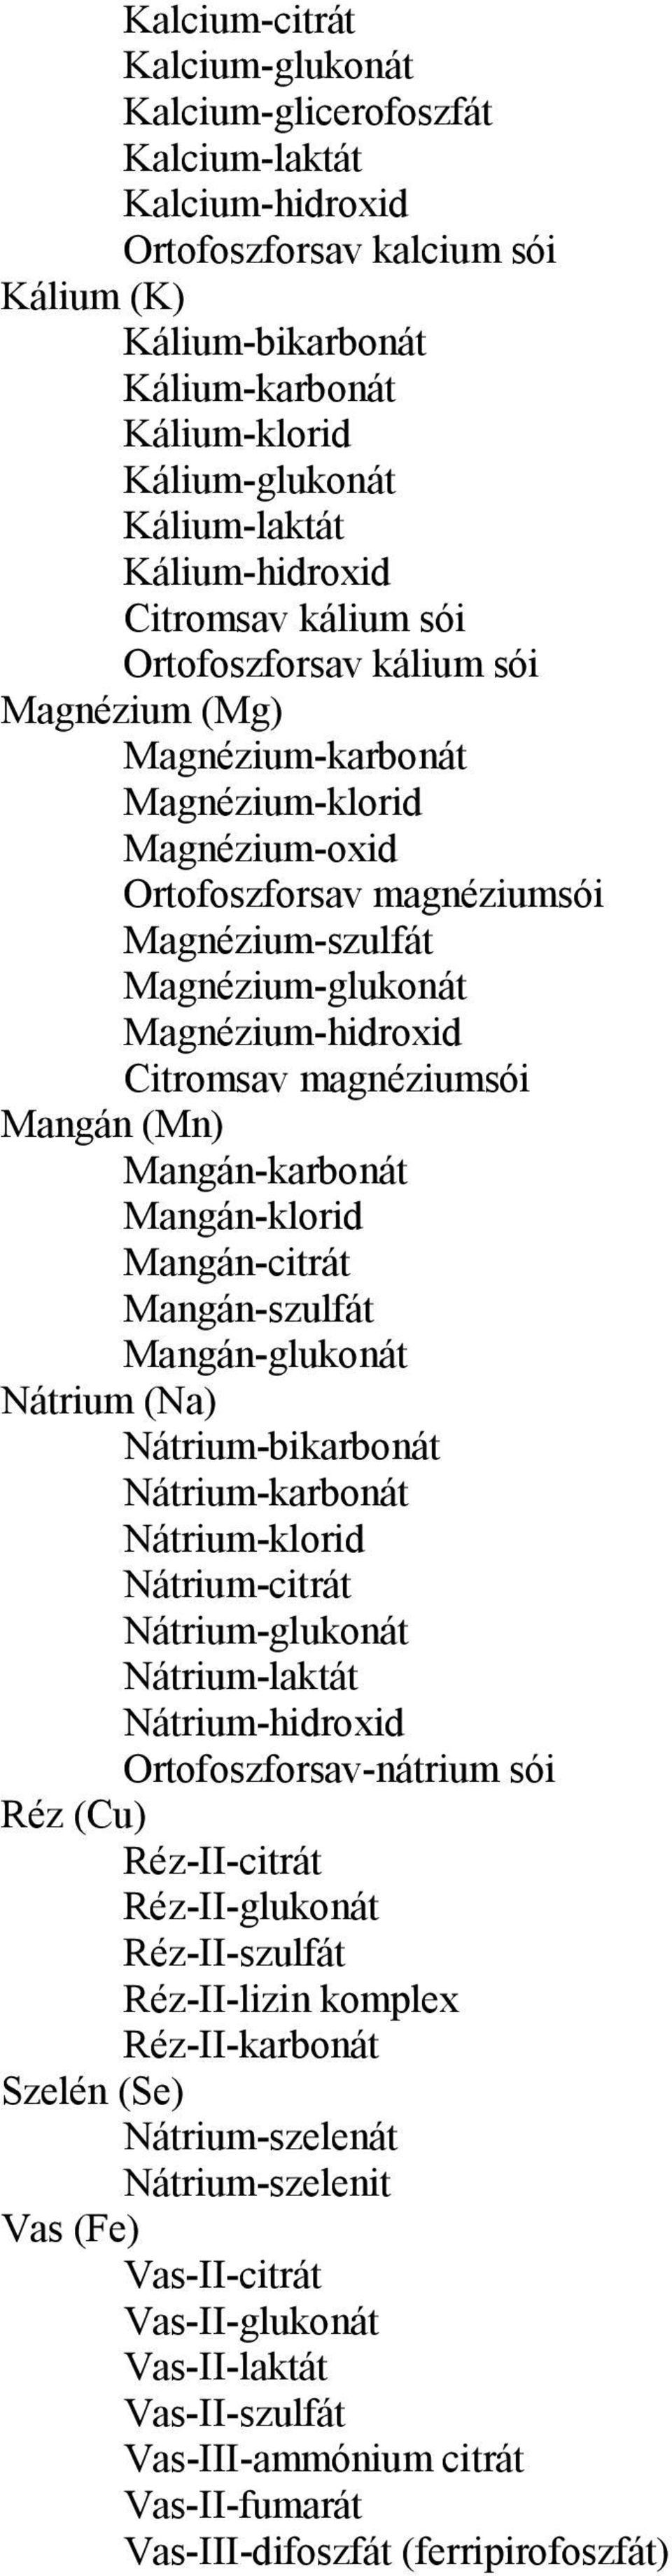 Magnézium-glukonát Magnézium-hidroxid Citromsav magnéziumsói Mangán (Mn) Mangán-karbonát Mangán-klorid Mangán-citrát Mangán-szulfát Mangán-glukonát Nátrium (Na) Nátrium-bikarbonát Nátrium-karbonát